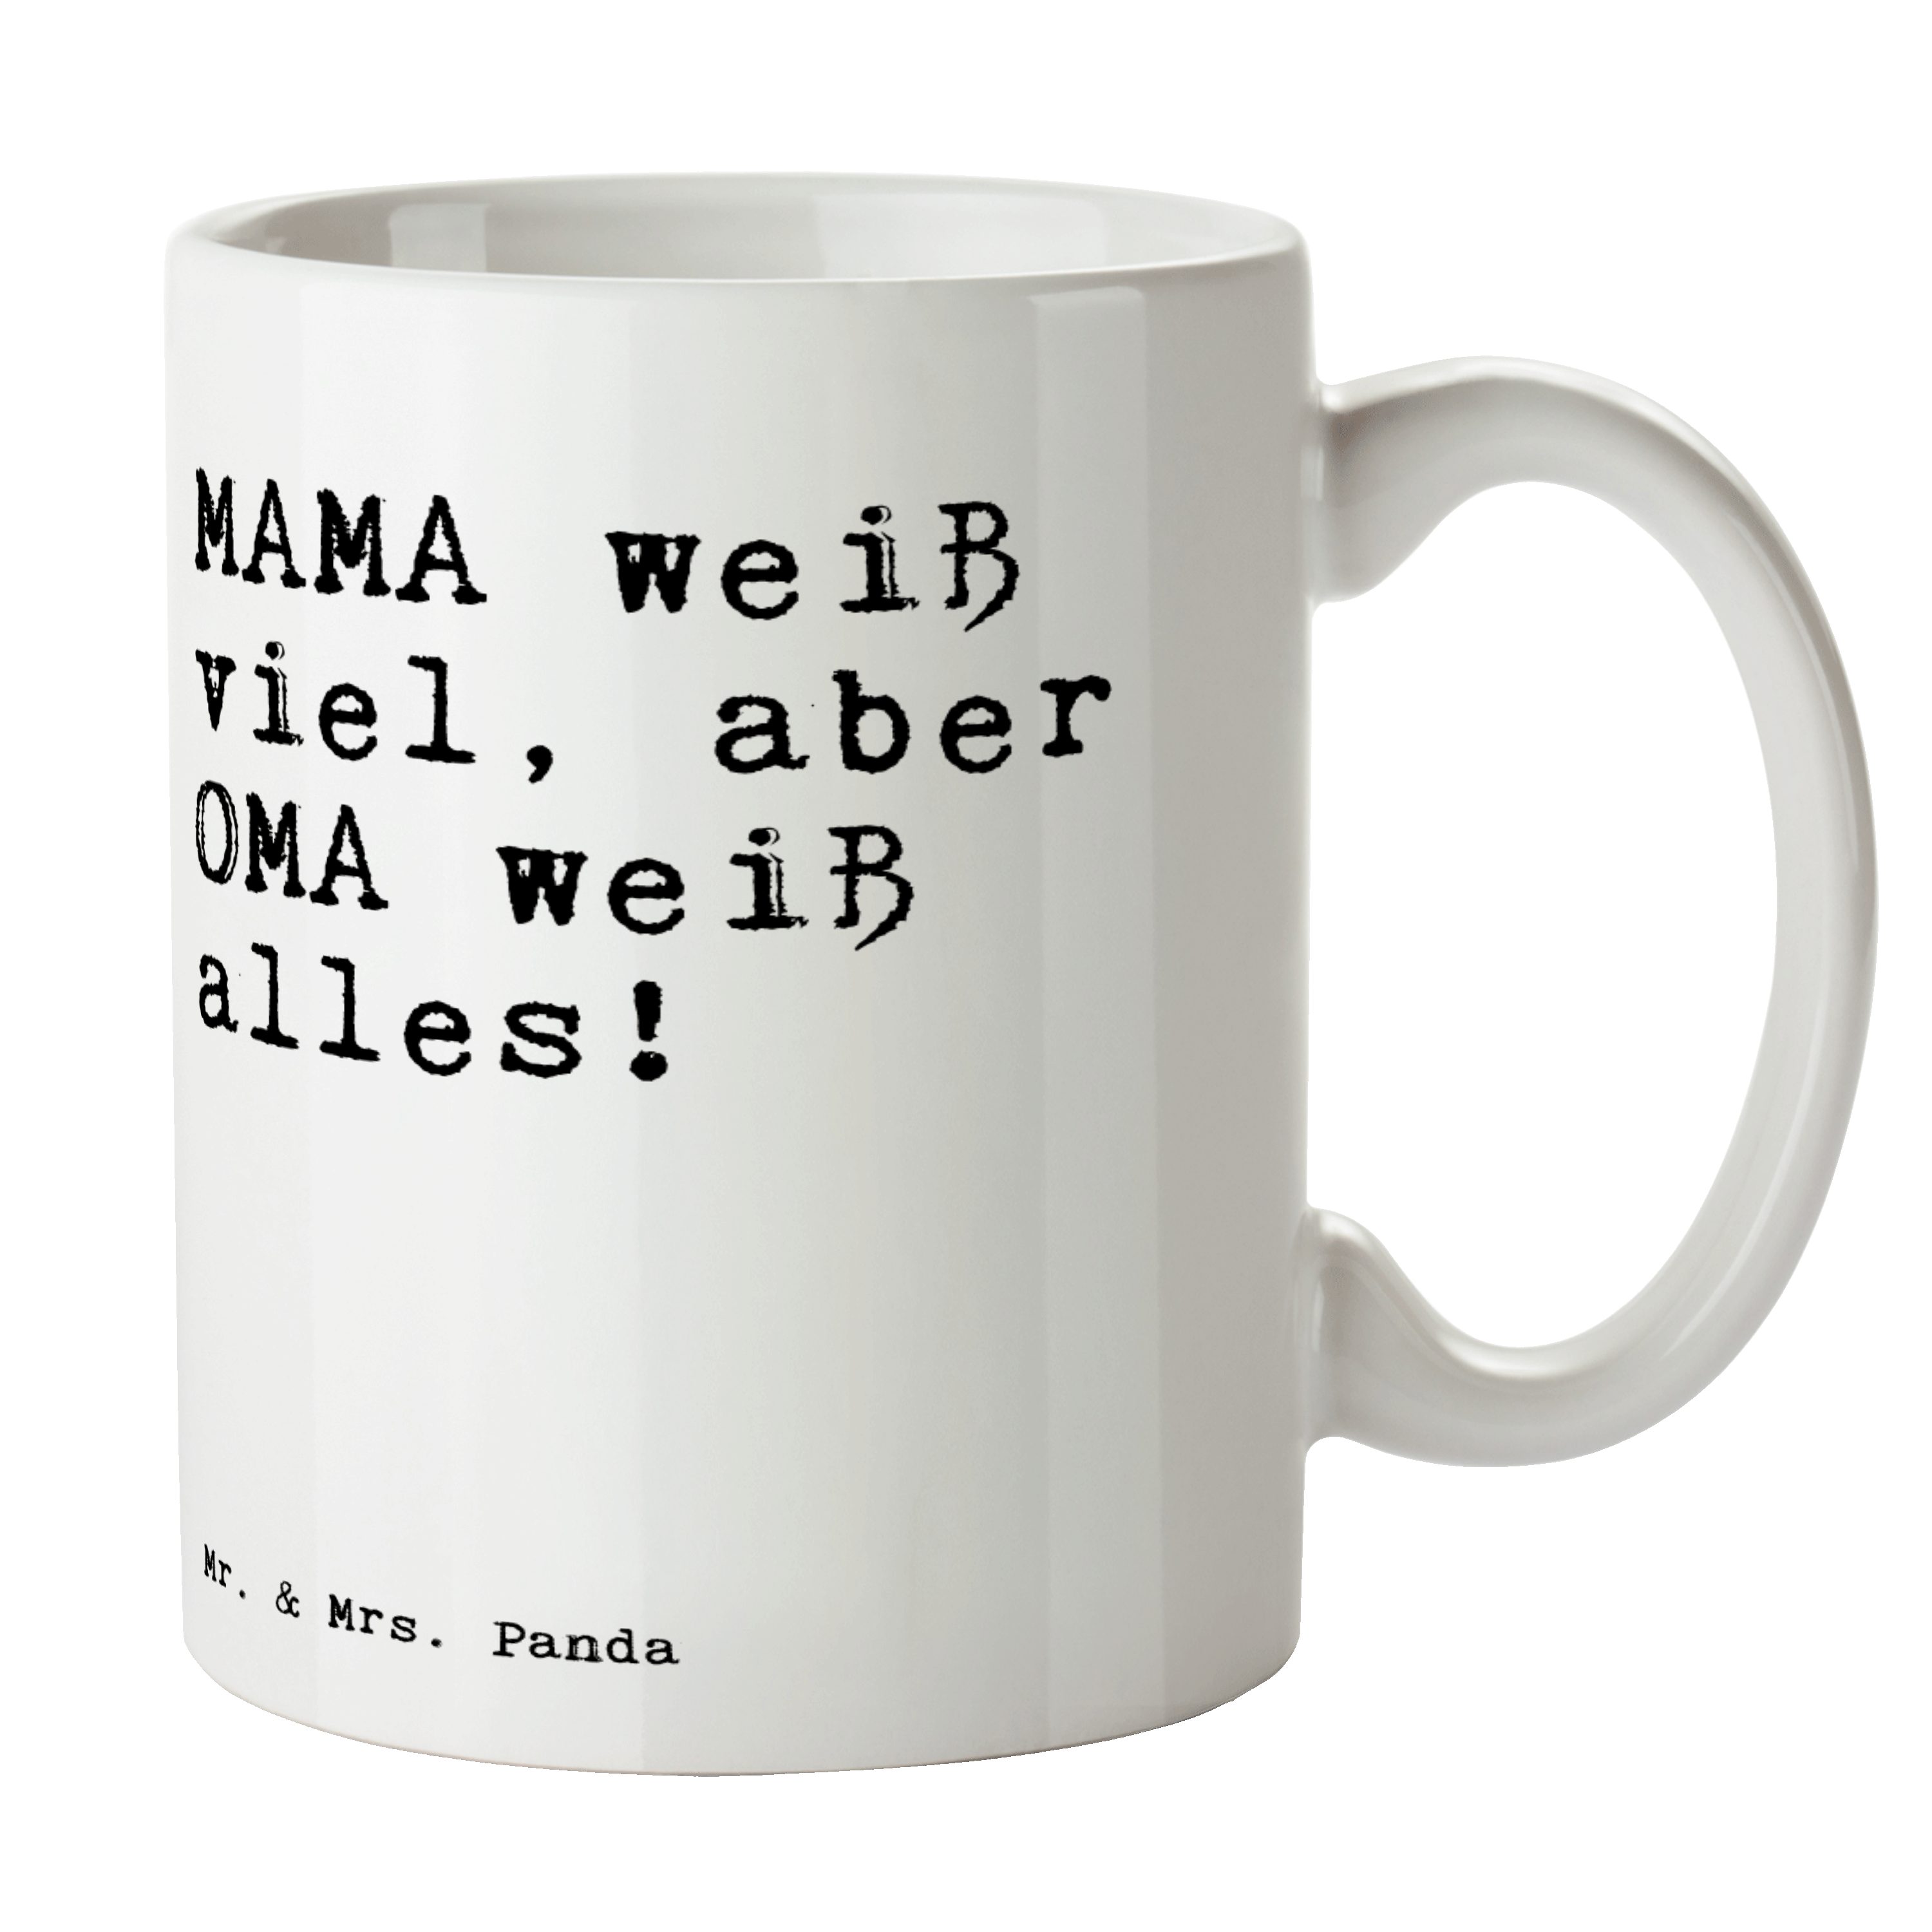 Mr. & Mrs. Panda Tasse MAMA weiß viel, aber... - Weiß - Geschenk, Familie, Teetasse, Porzell, Keramik